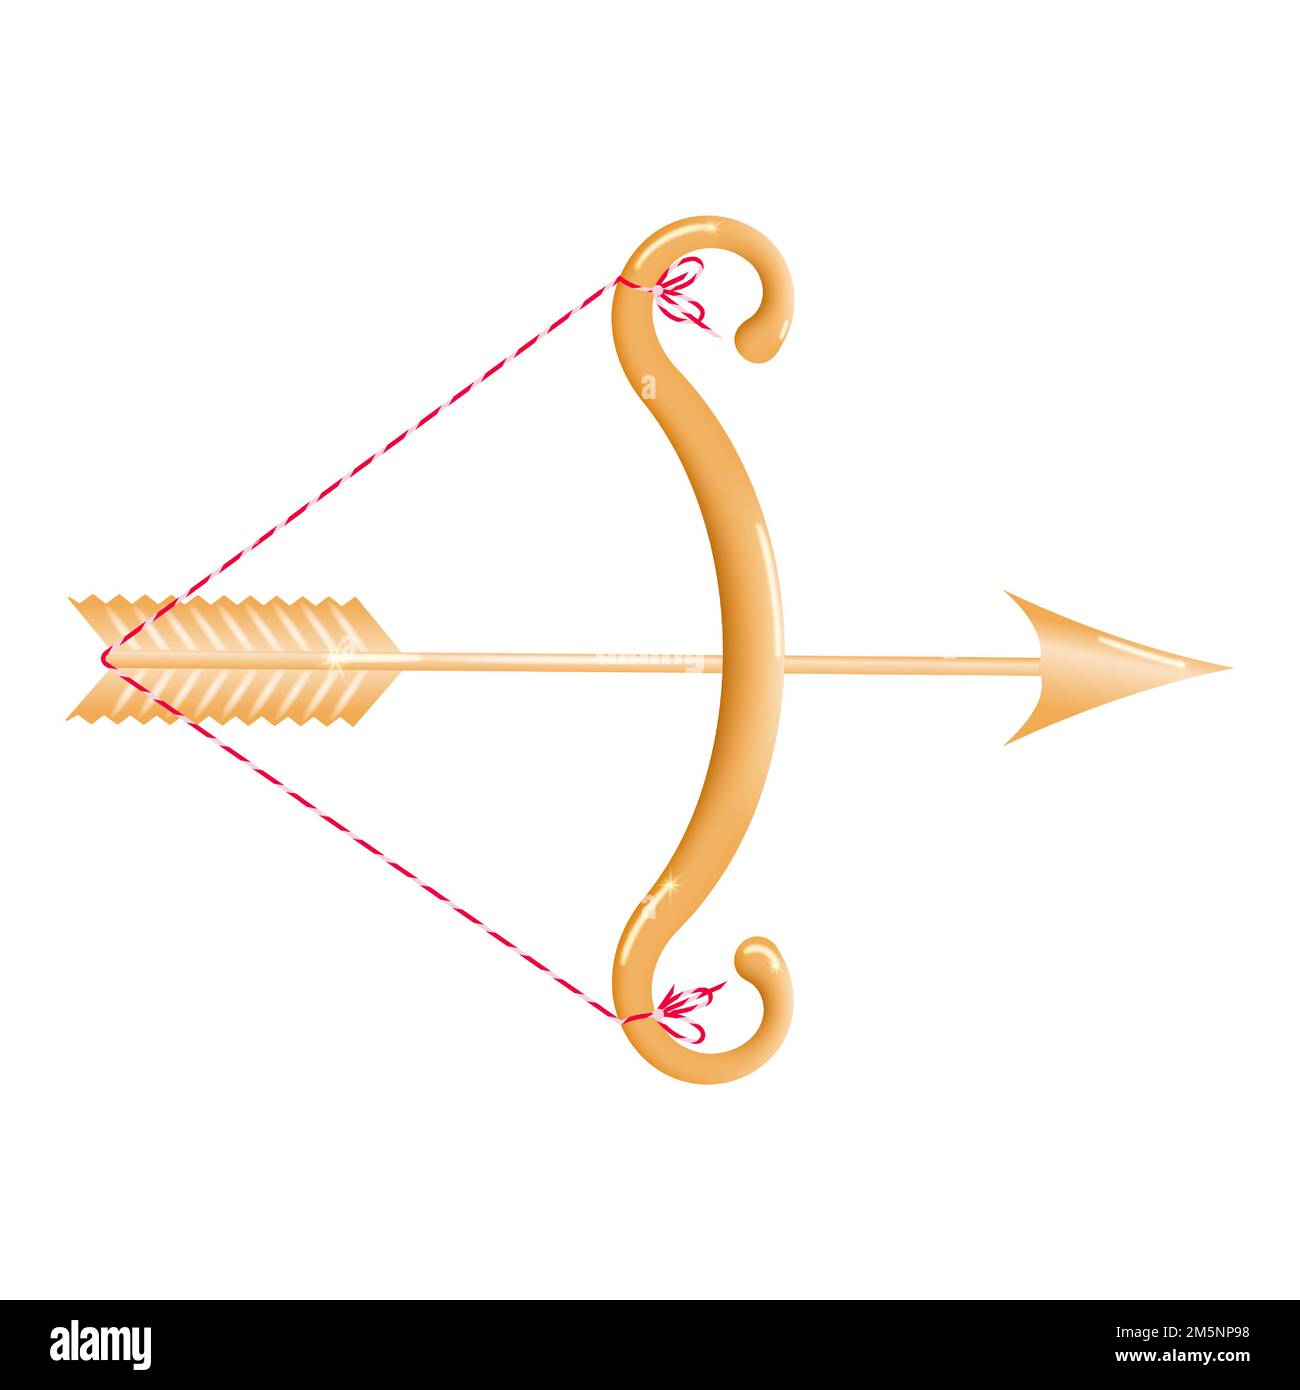 Arc doré 3D avec une corde étirée et une flèche dorée chargée isolée sur un fond blanc. Arc jaune avec flèche. Illustration vectorielle. Illustration de Vecteur